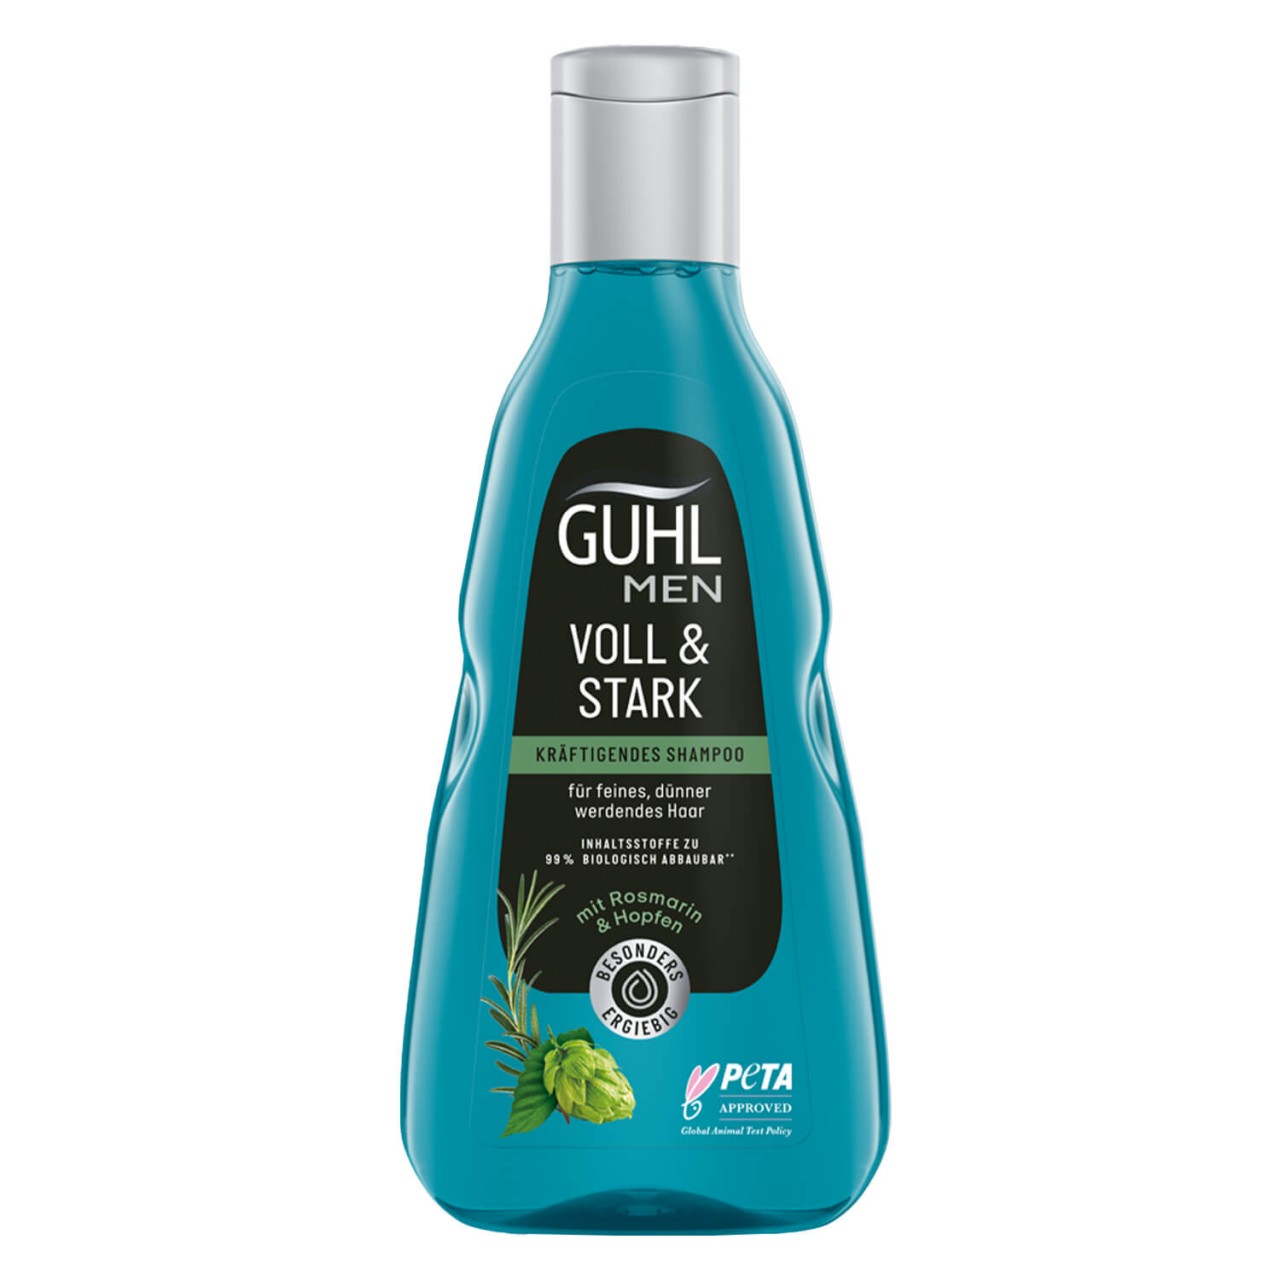 GUHL - MEN VOLL & STARK Kräftigendes Shampoo von GUHL